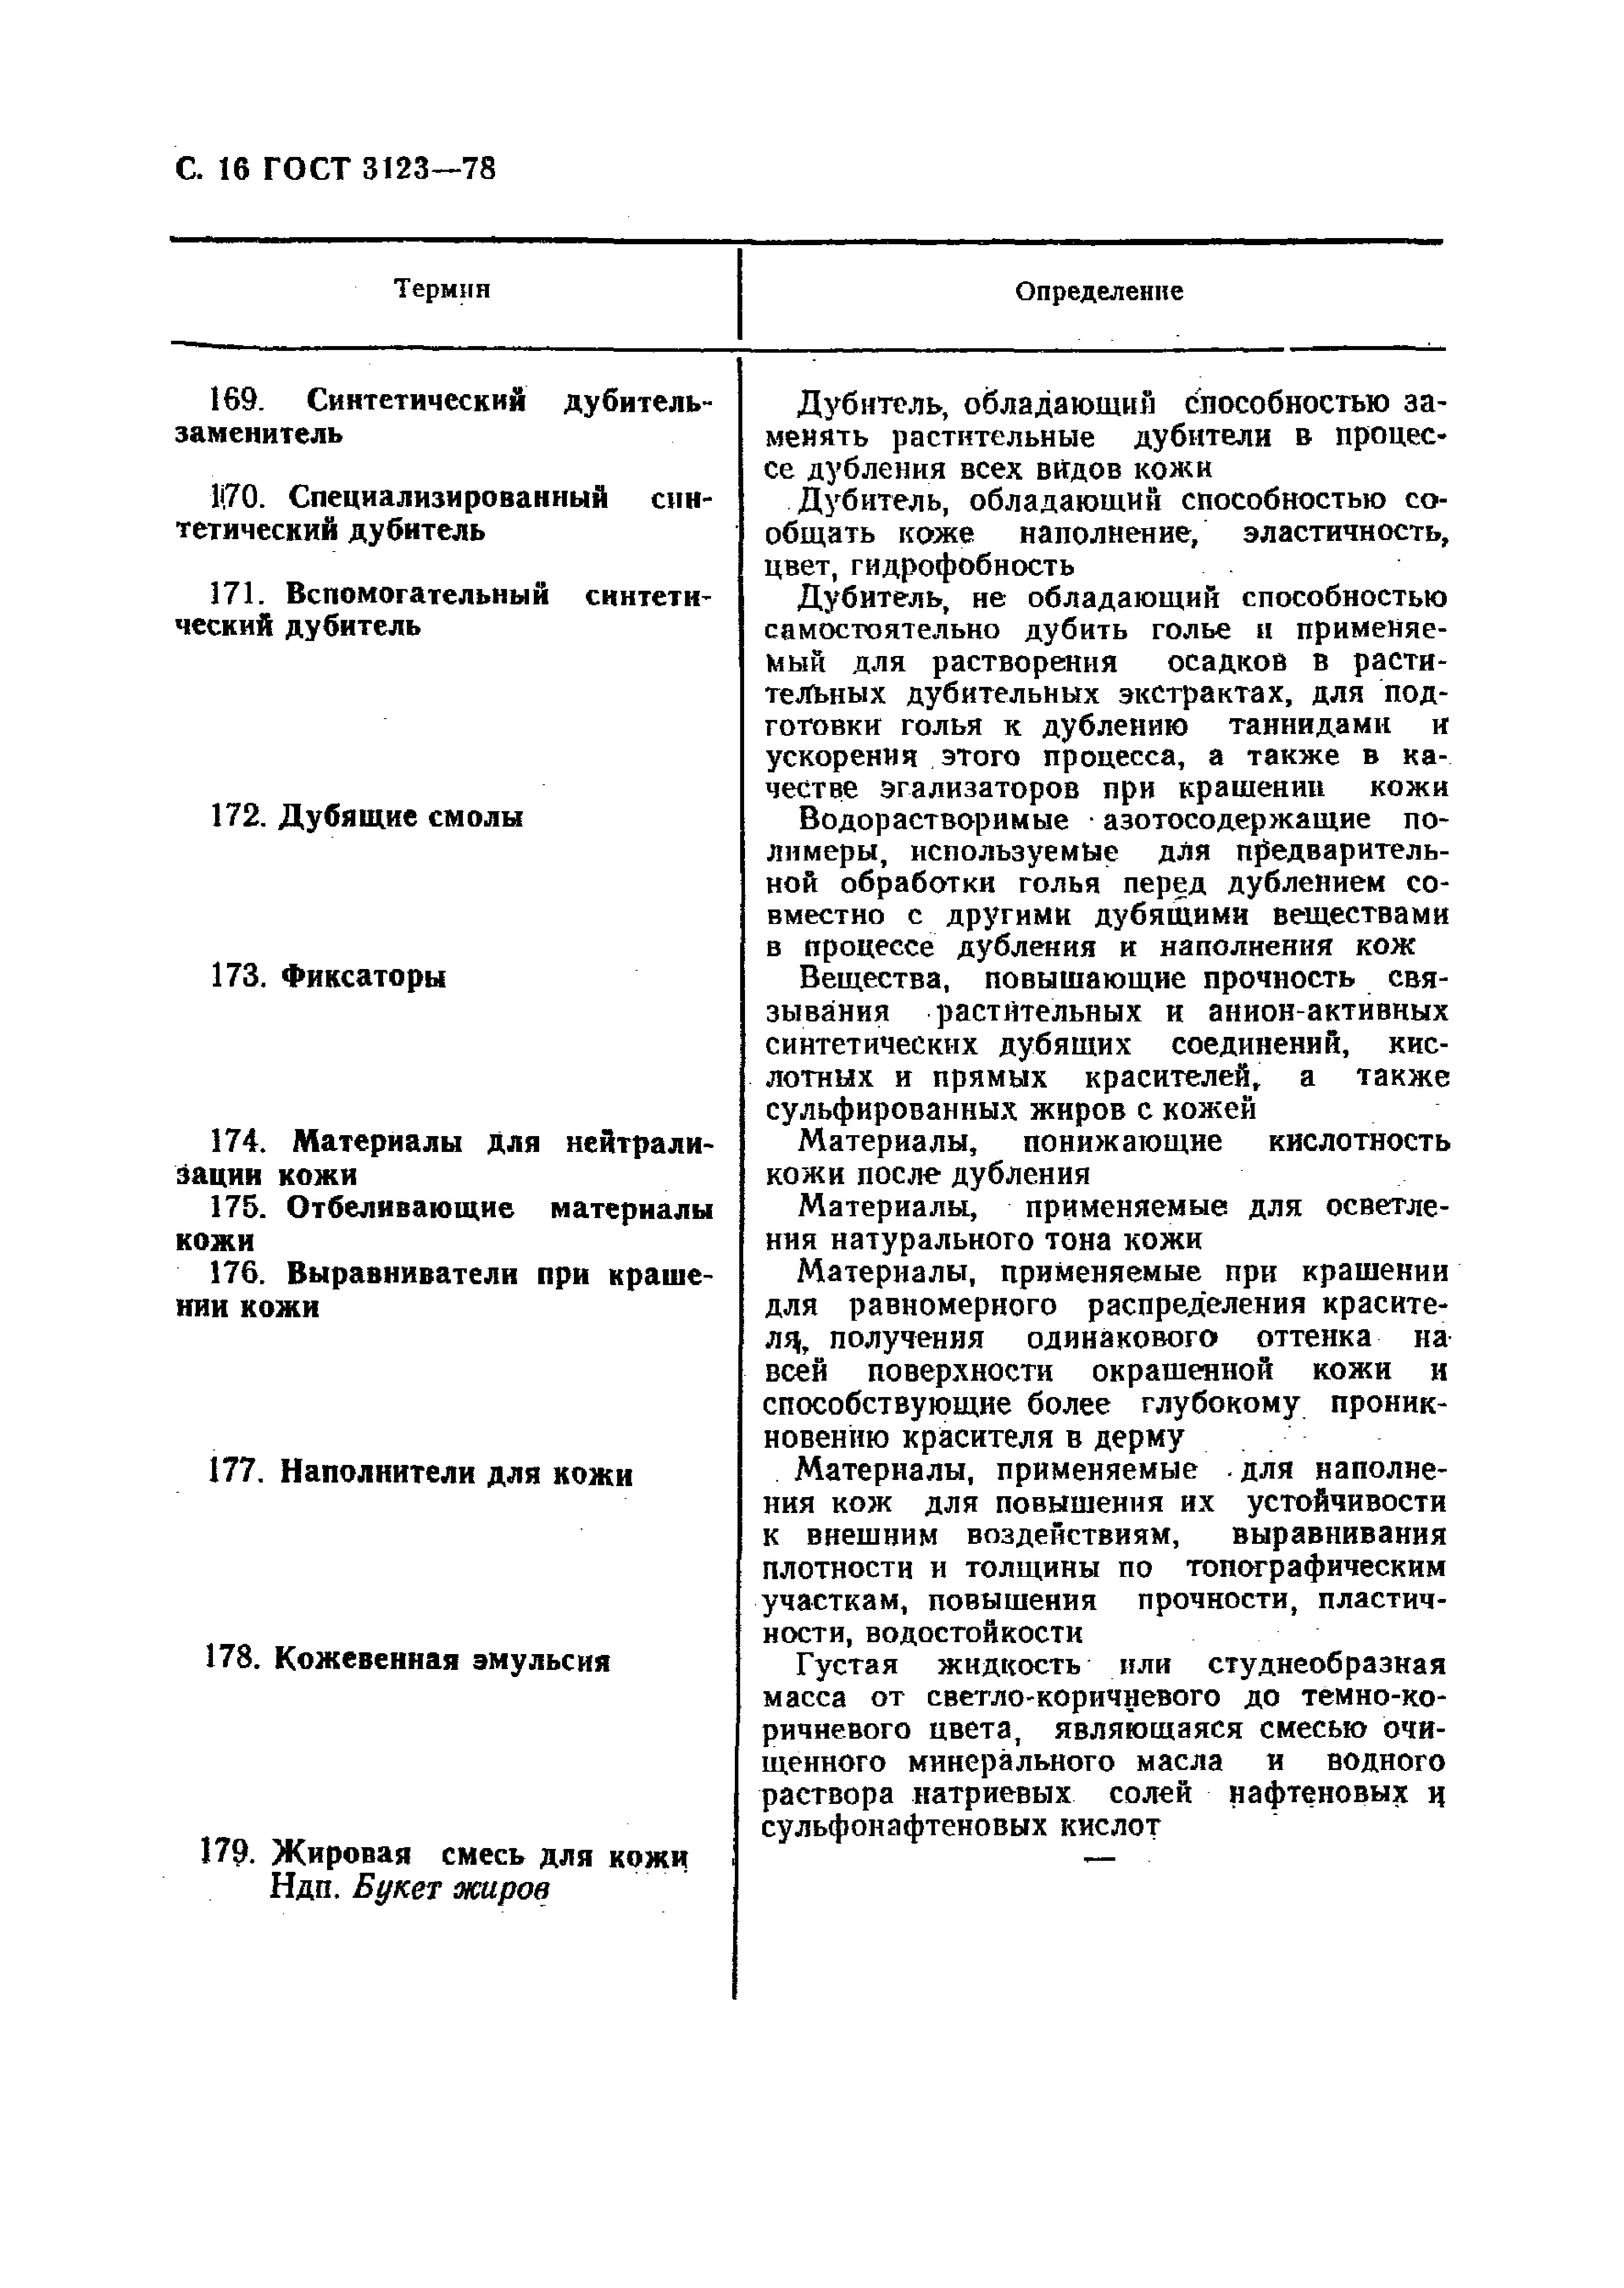 GOST_3123-78_Proizvodstvo_kozhevennoe_Terminy_i_opredelenia (1)_page-0018.jpg